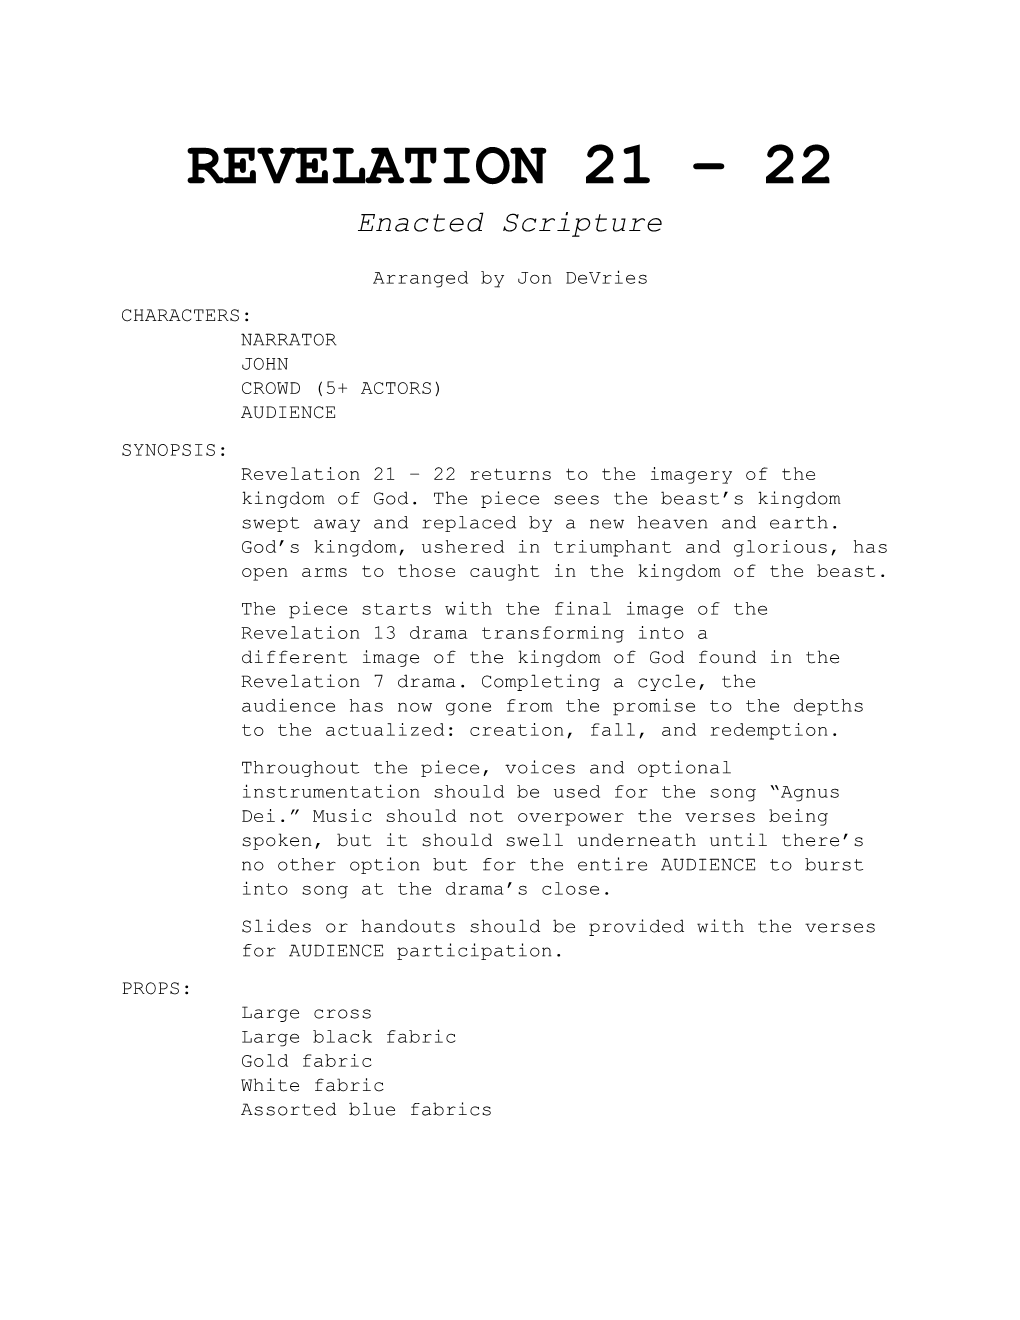 Revelation 21 22: Script/Song